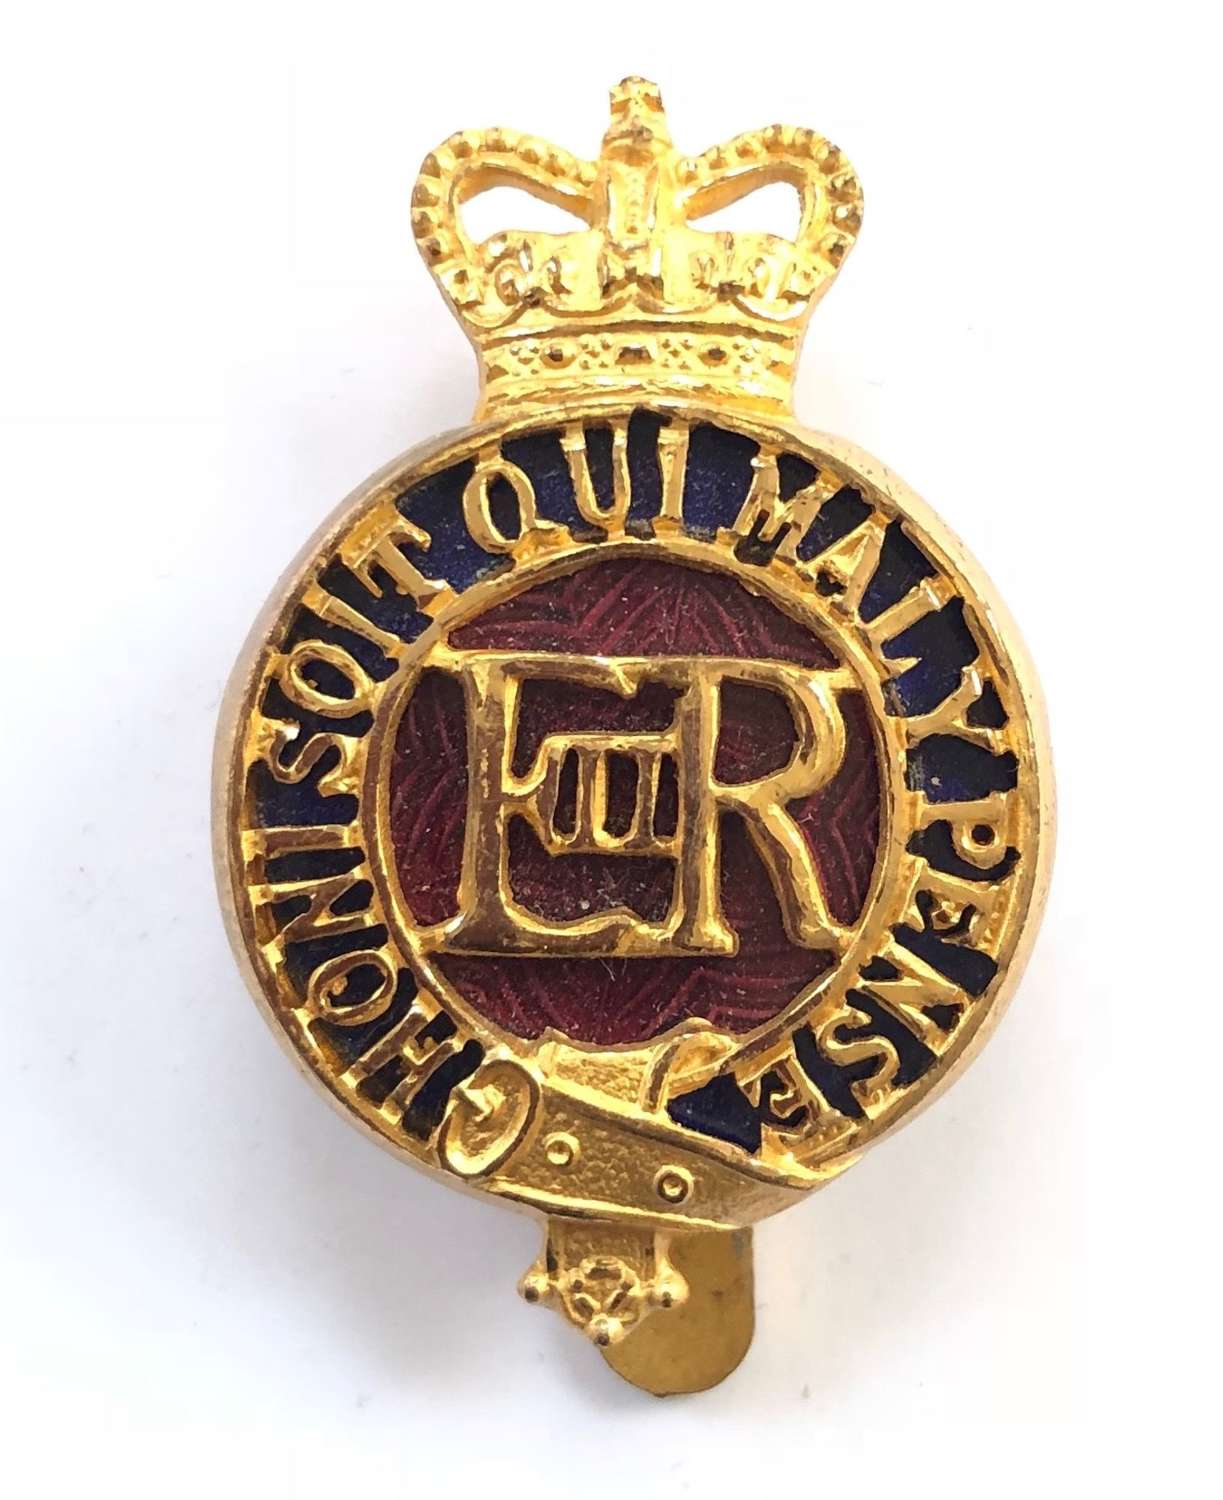 Household Cavalry Warrant Officer’s EIIR gilt & enamel cap badge